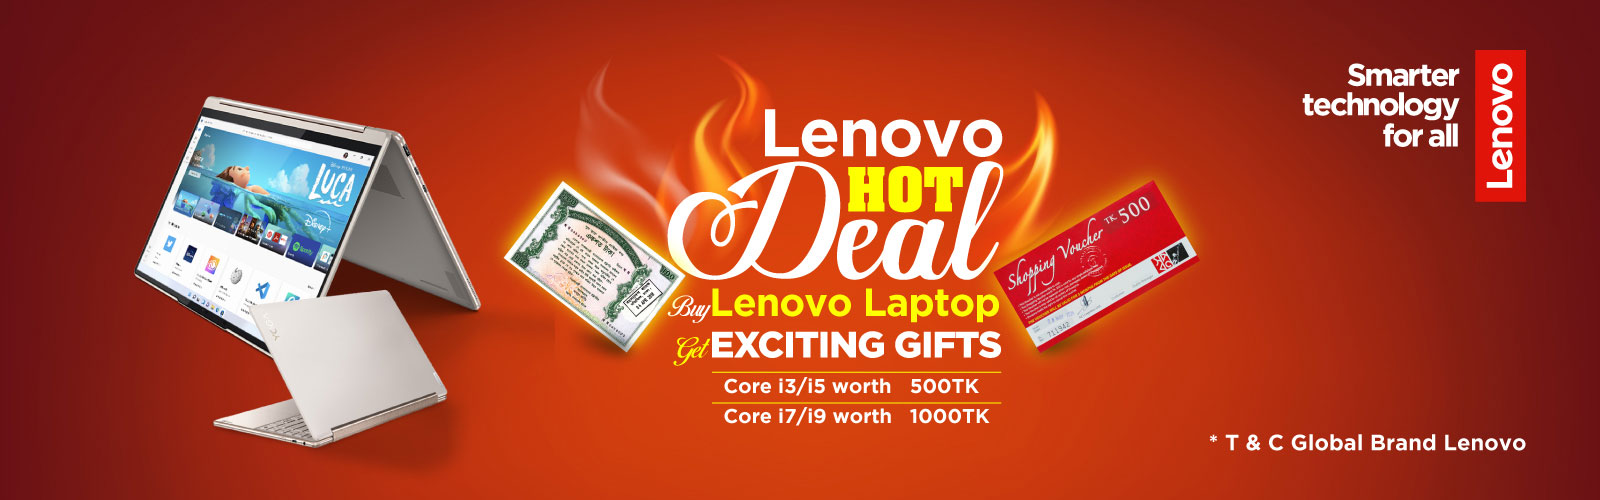 Lenovo Hot Deal Offer in Bangladesh